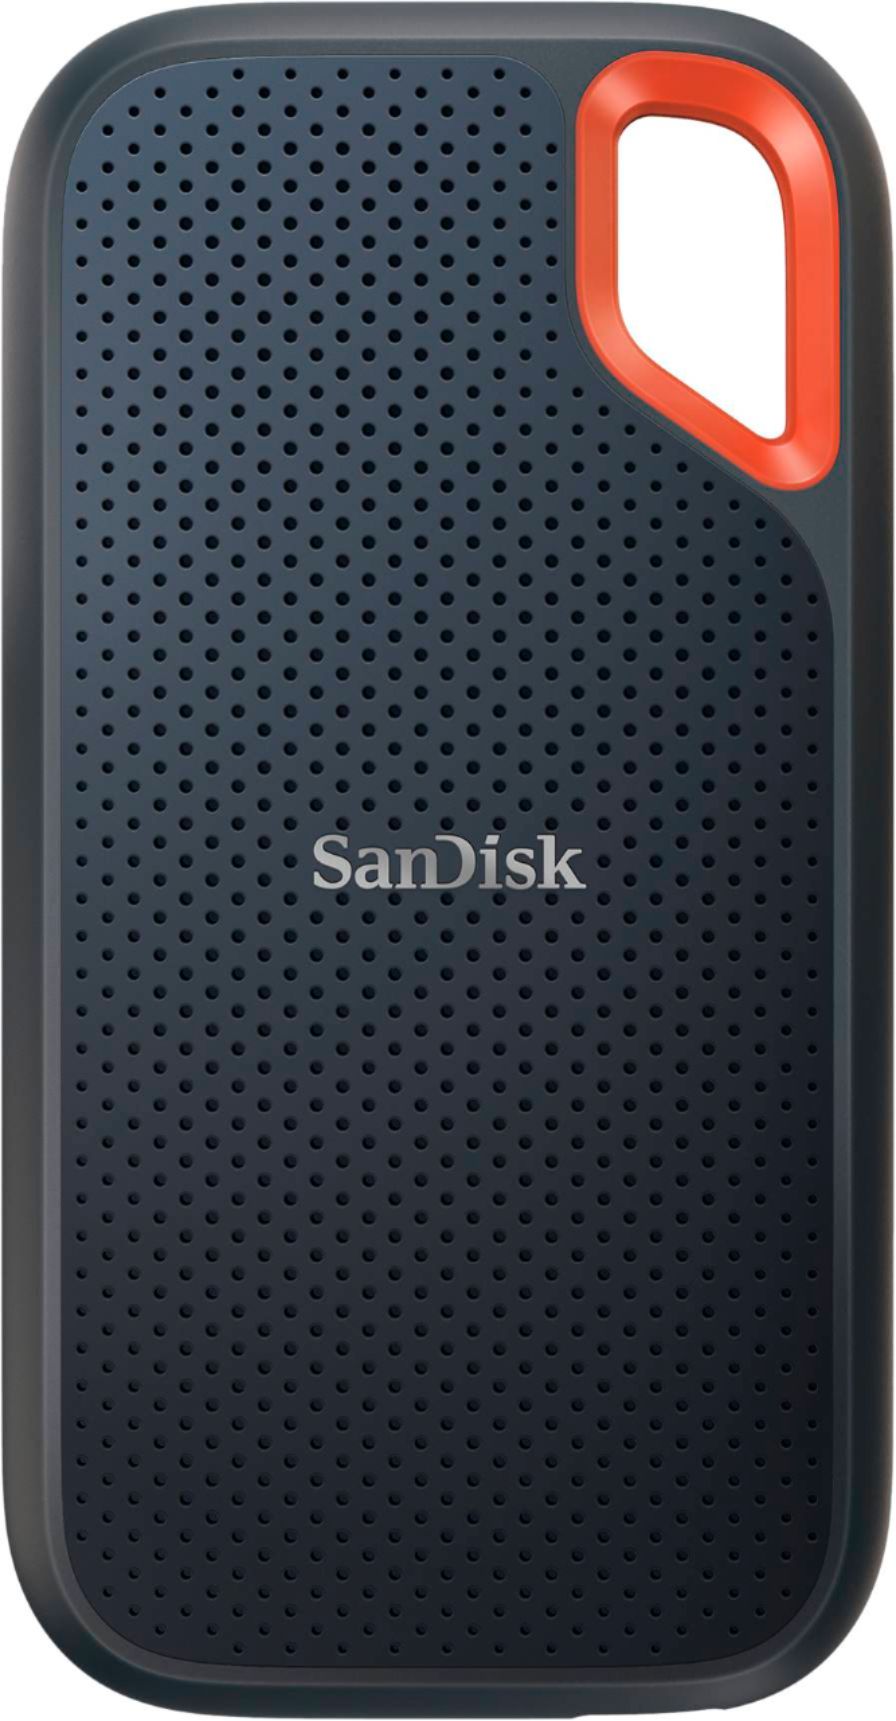 SanDisk Portable 500GB External USB-C NVMe SSD Black SDSSDE61-500G-G25 - Best Buy